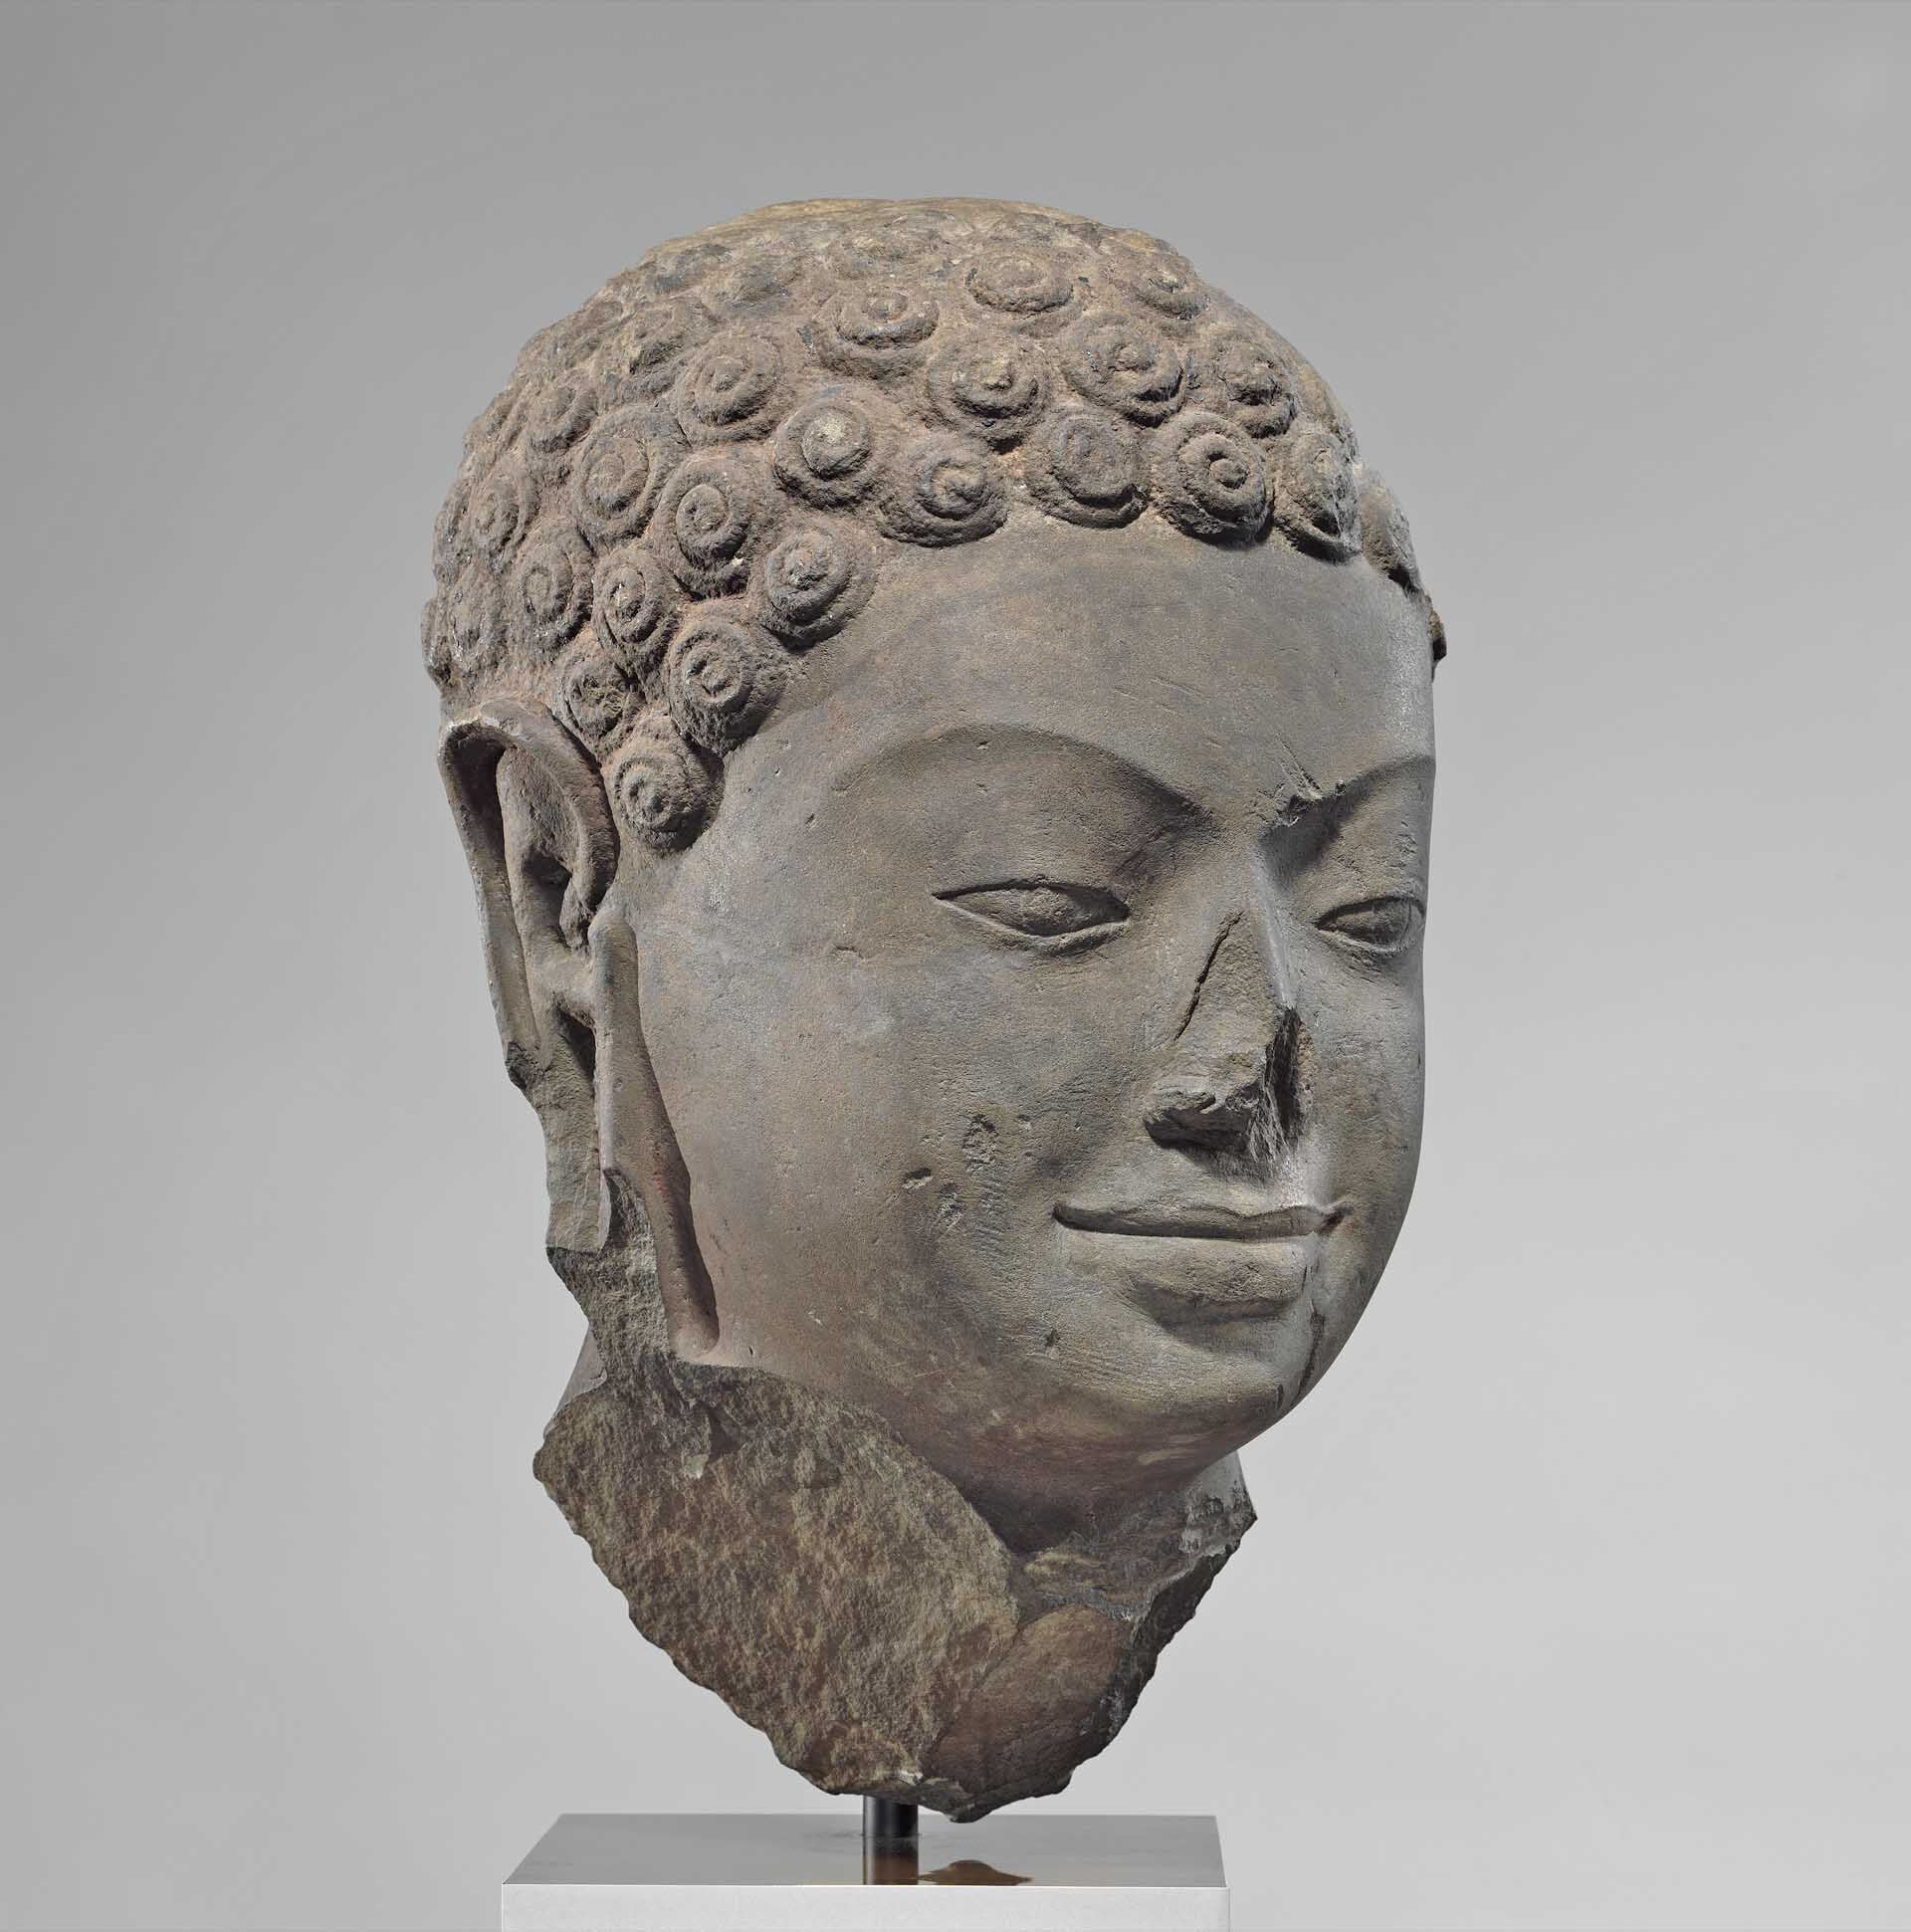 พิพิธภัณฑ์ดังในนิวยอร์กจ่อส่ง “โบราณวัตถุเก่าแก่” 16 ชิ้น กลับคืนกัมพูชา-ไทย